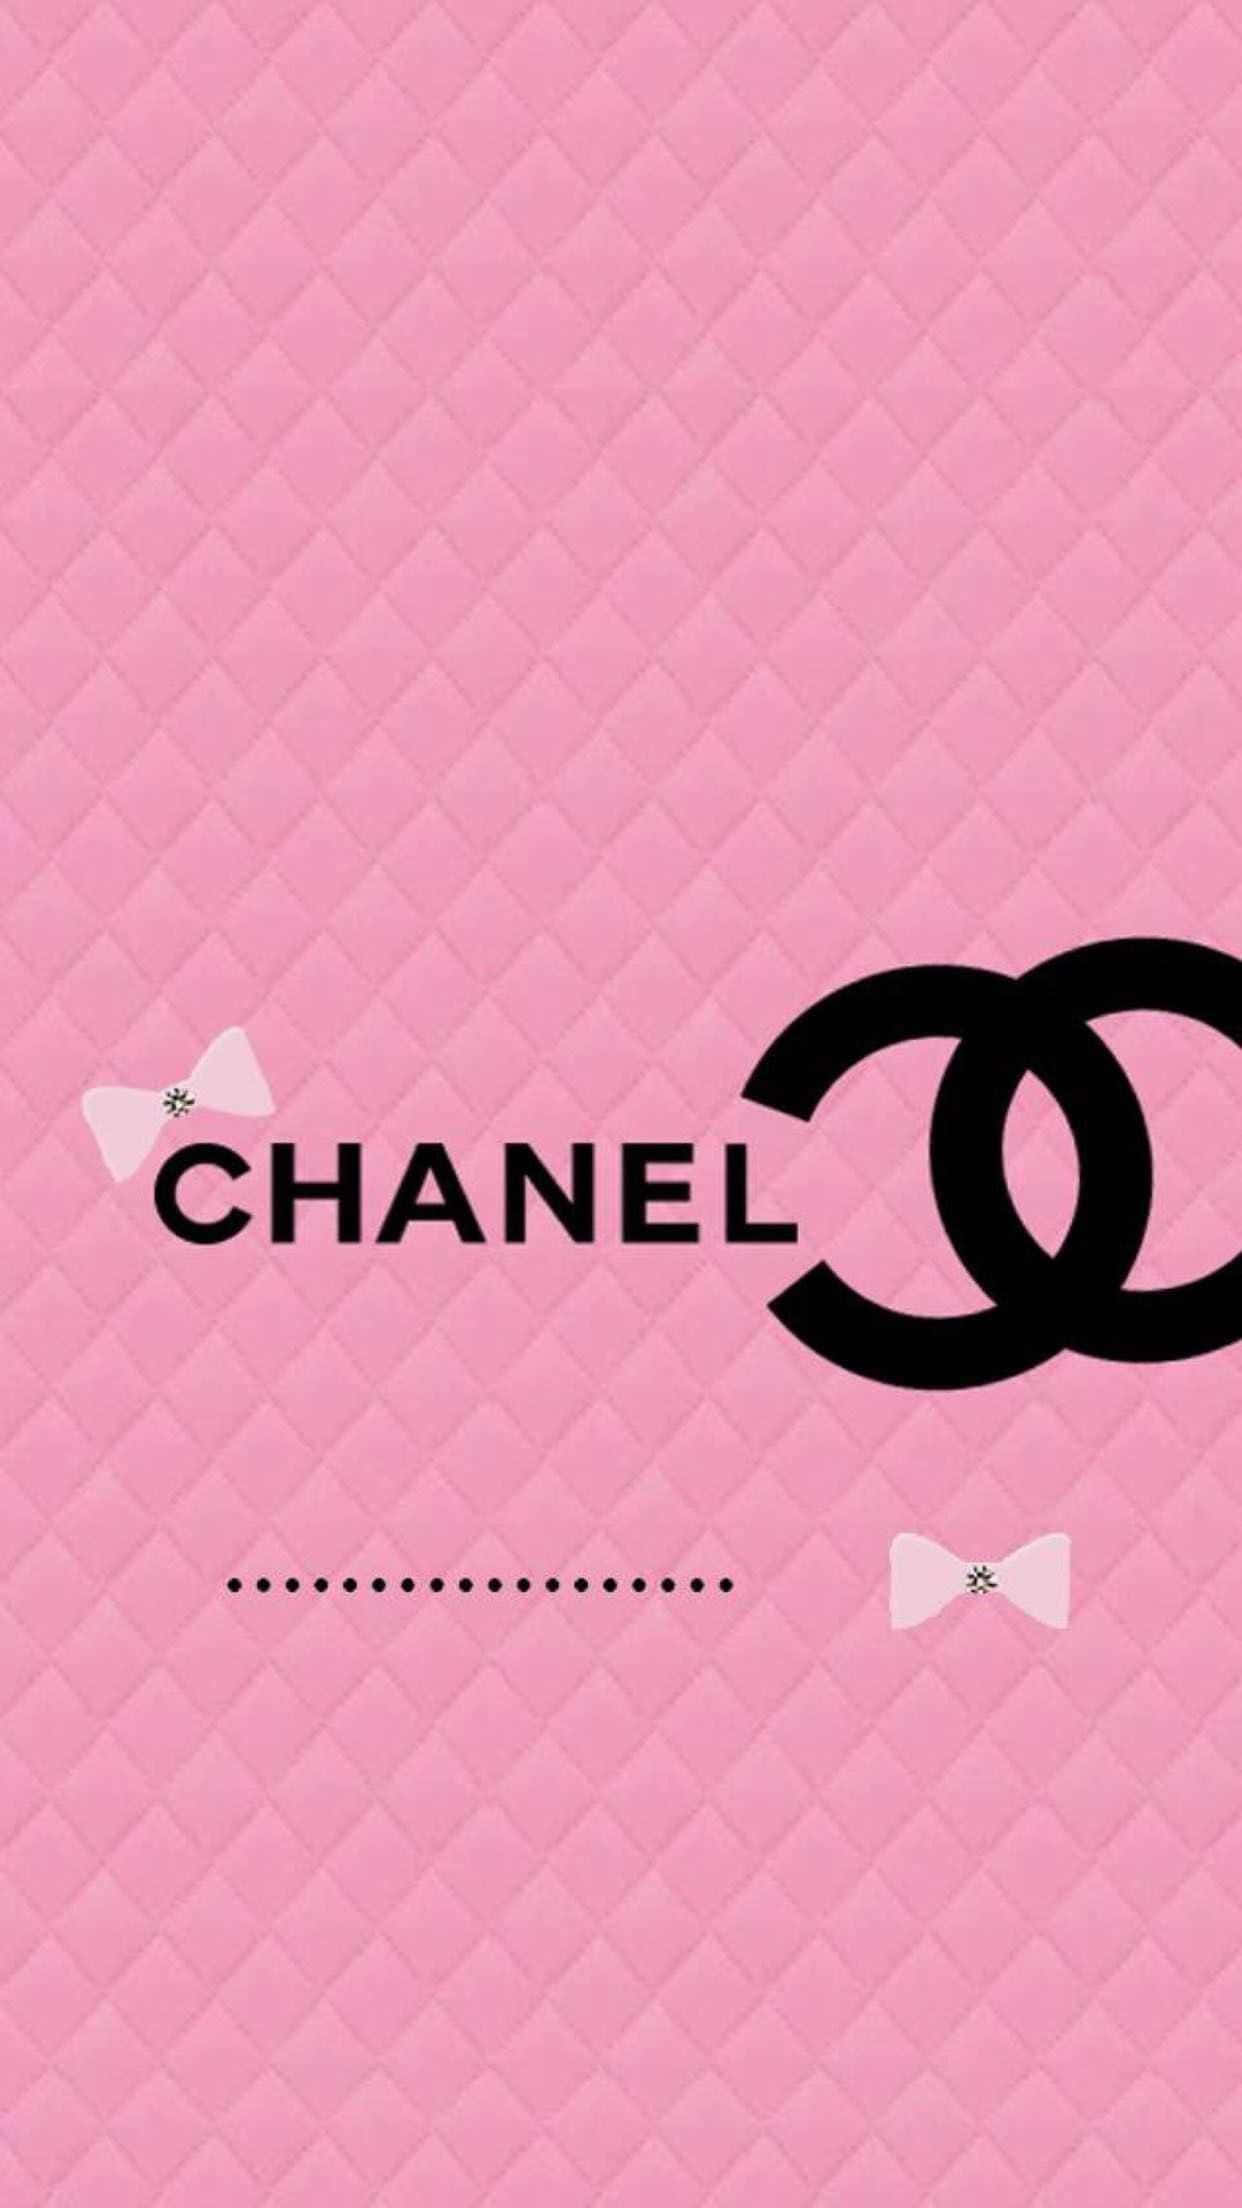 Chanellogo (logo Di Chanel)